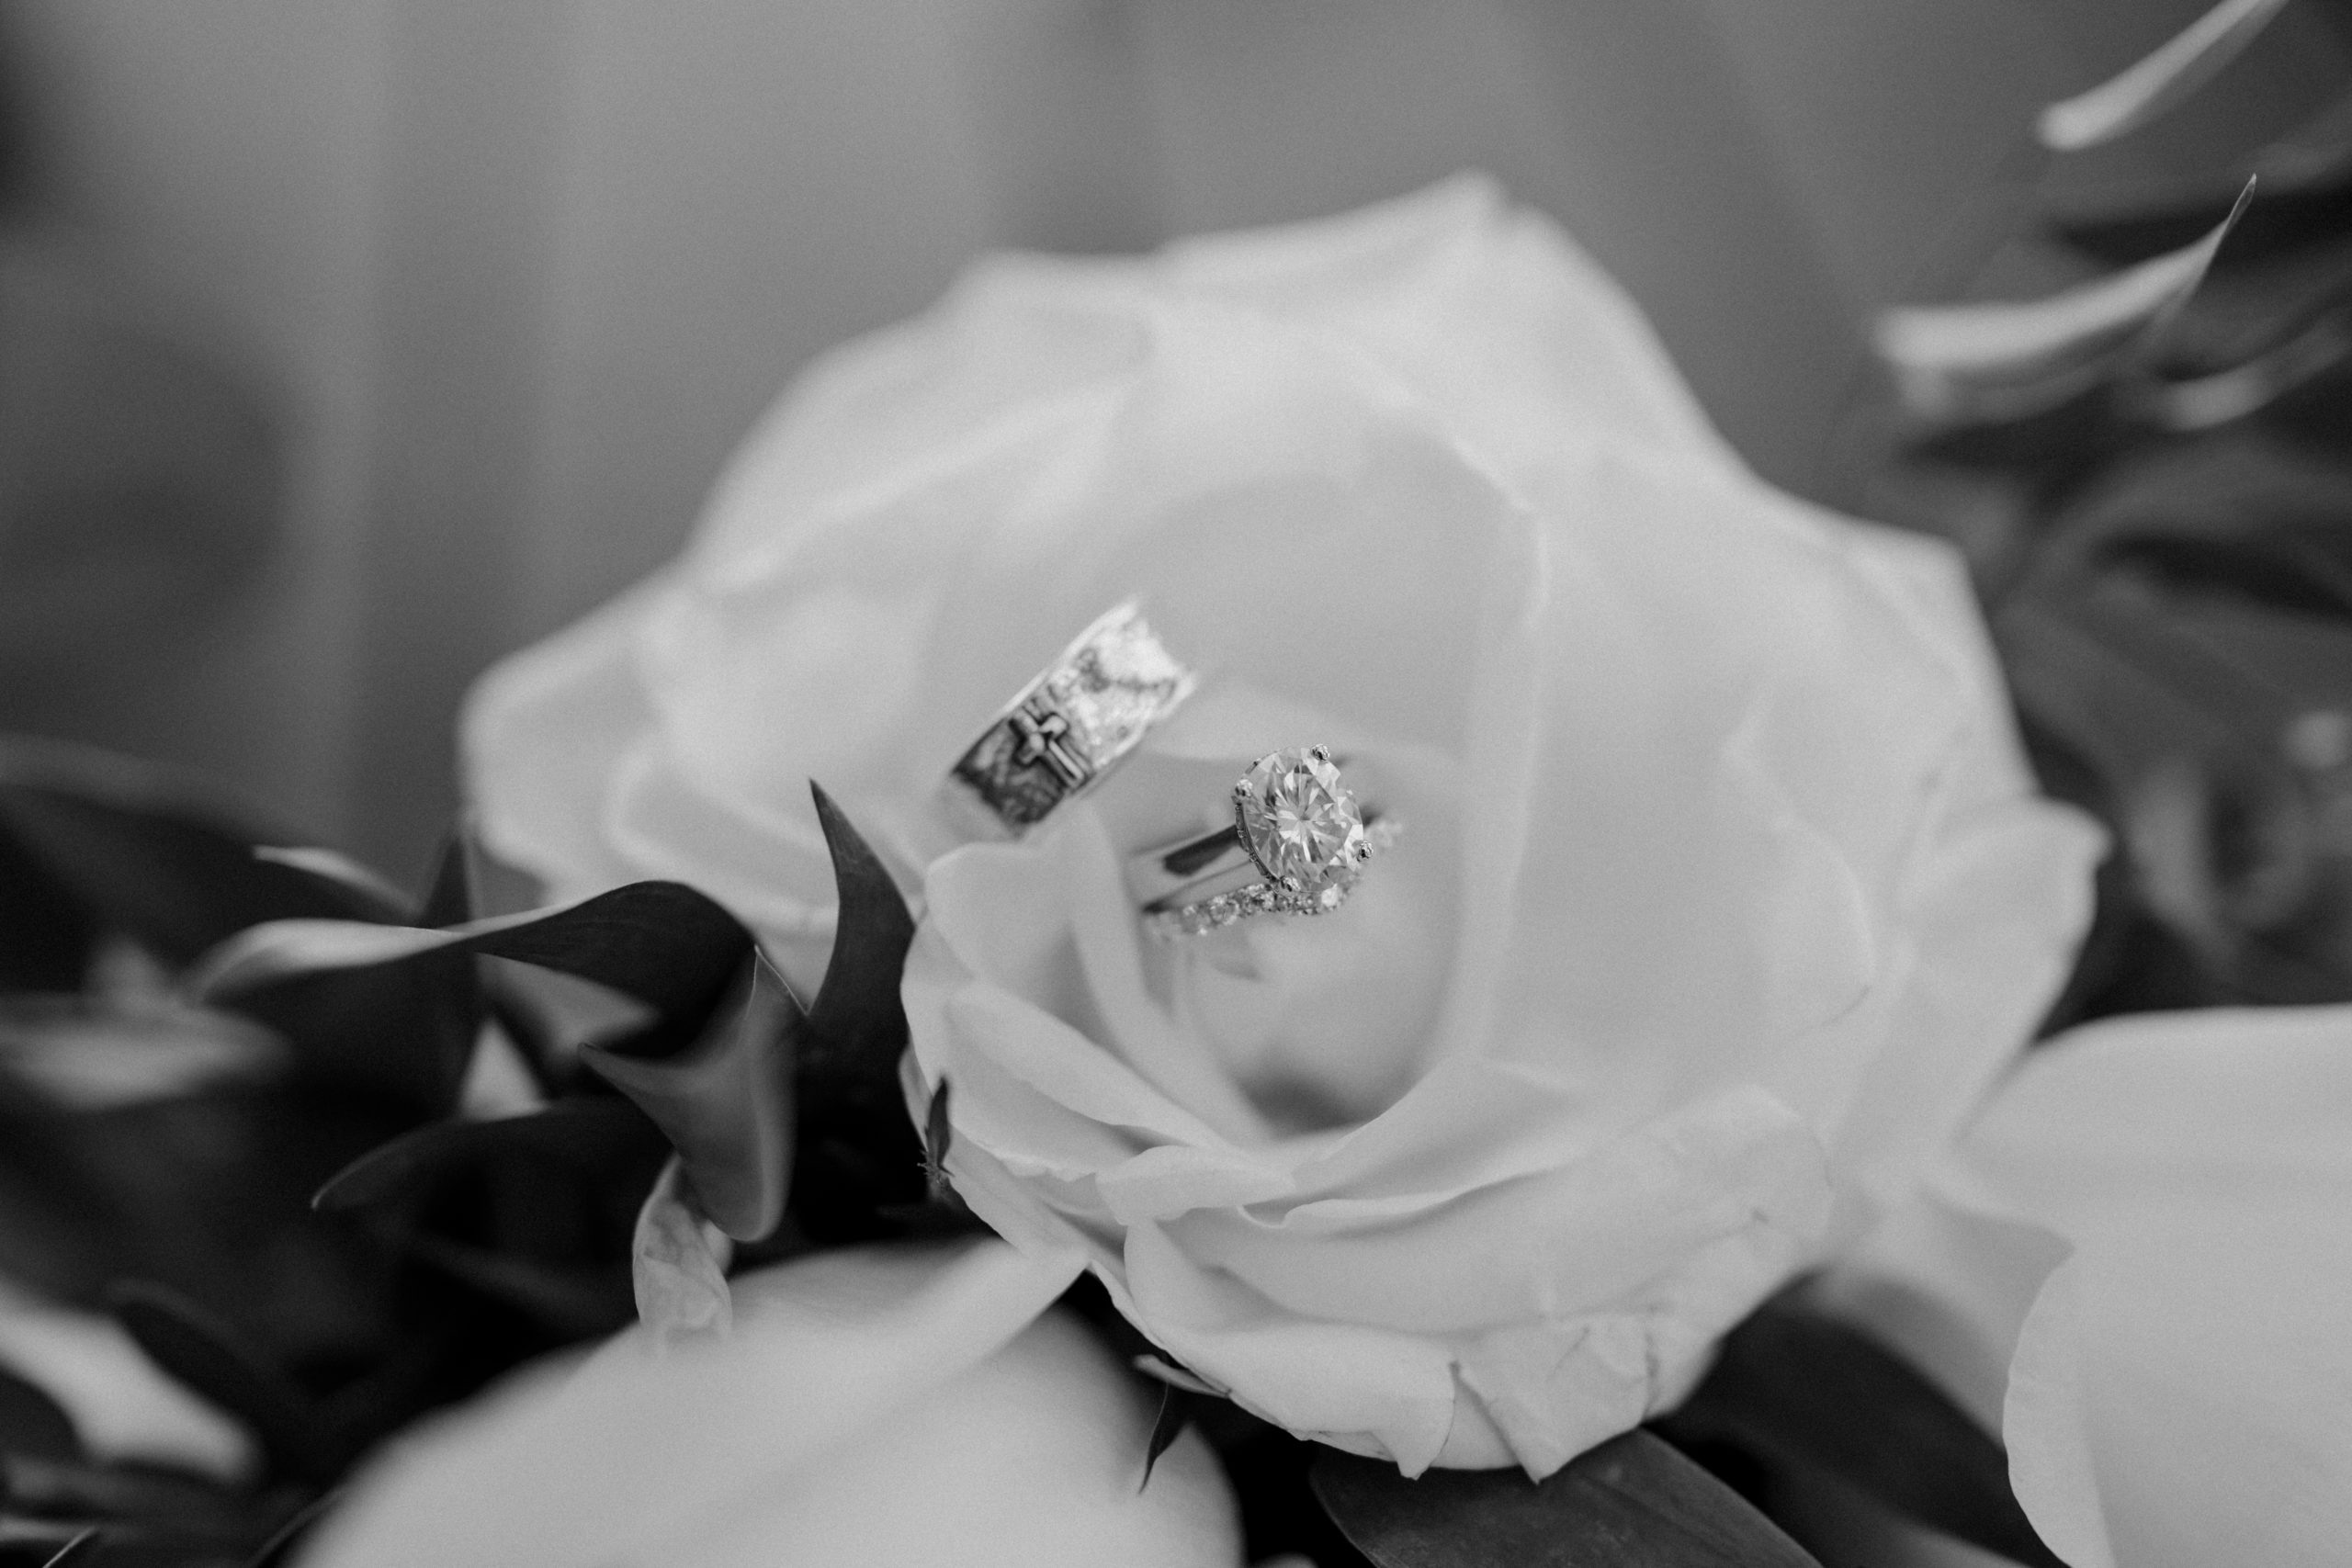 wedding rings on flowers